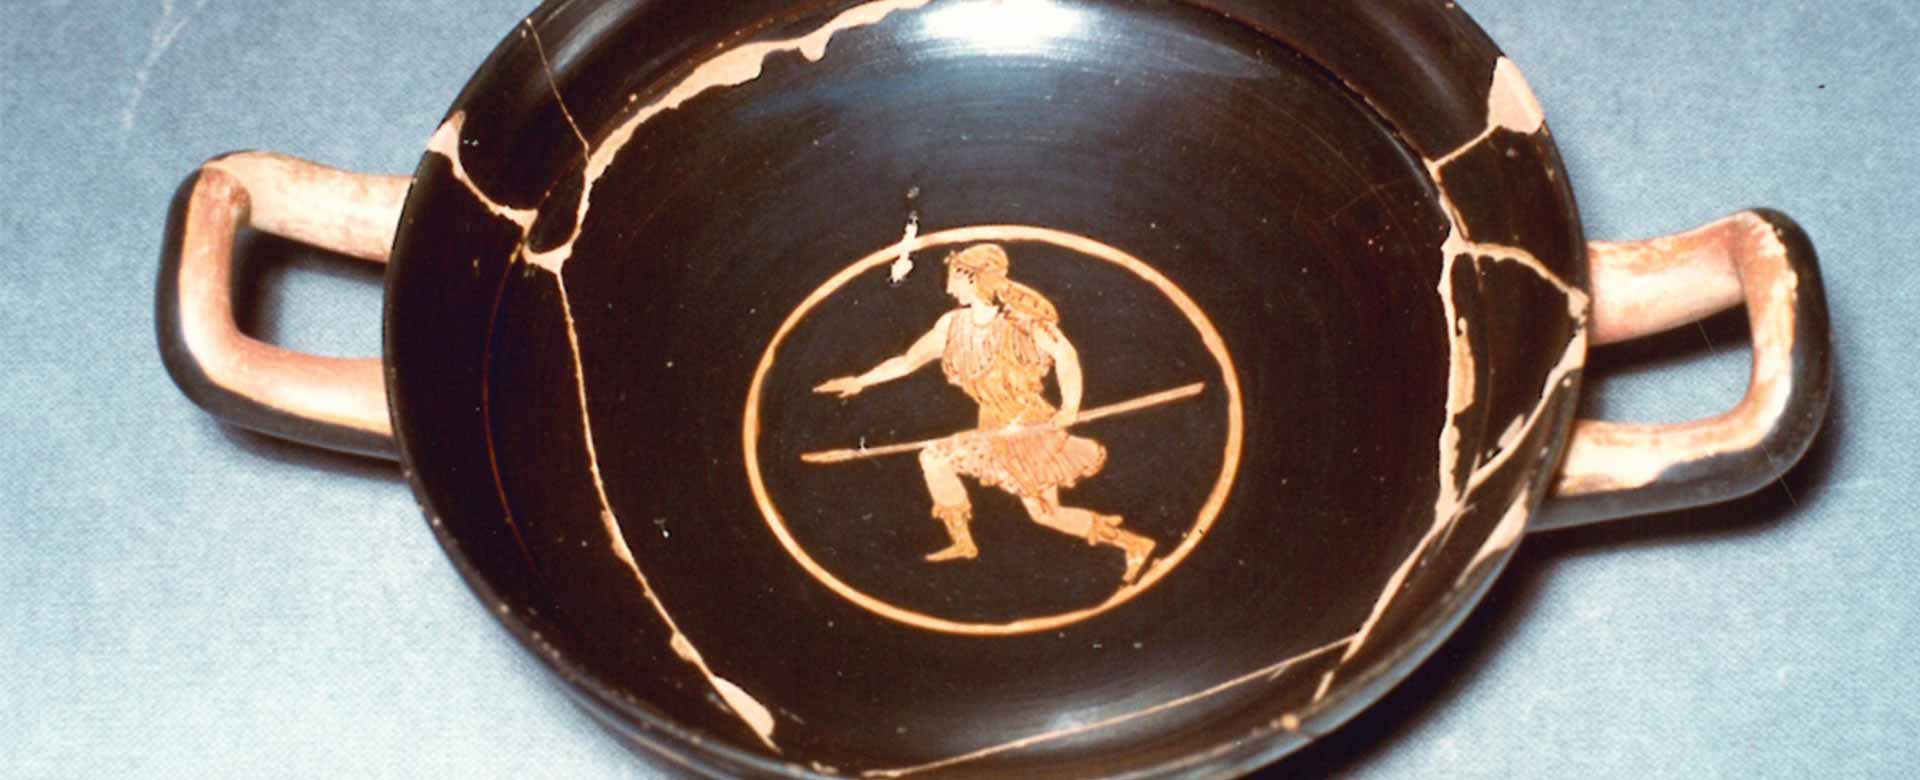 Coppa a figure rosse, di produzione attica; nel tondo Bendis, dea della vegetazione e degli animali. 440-430 a.C.